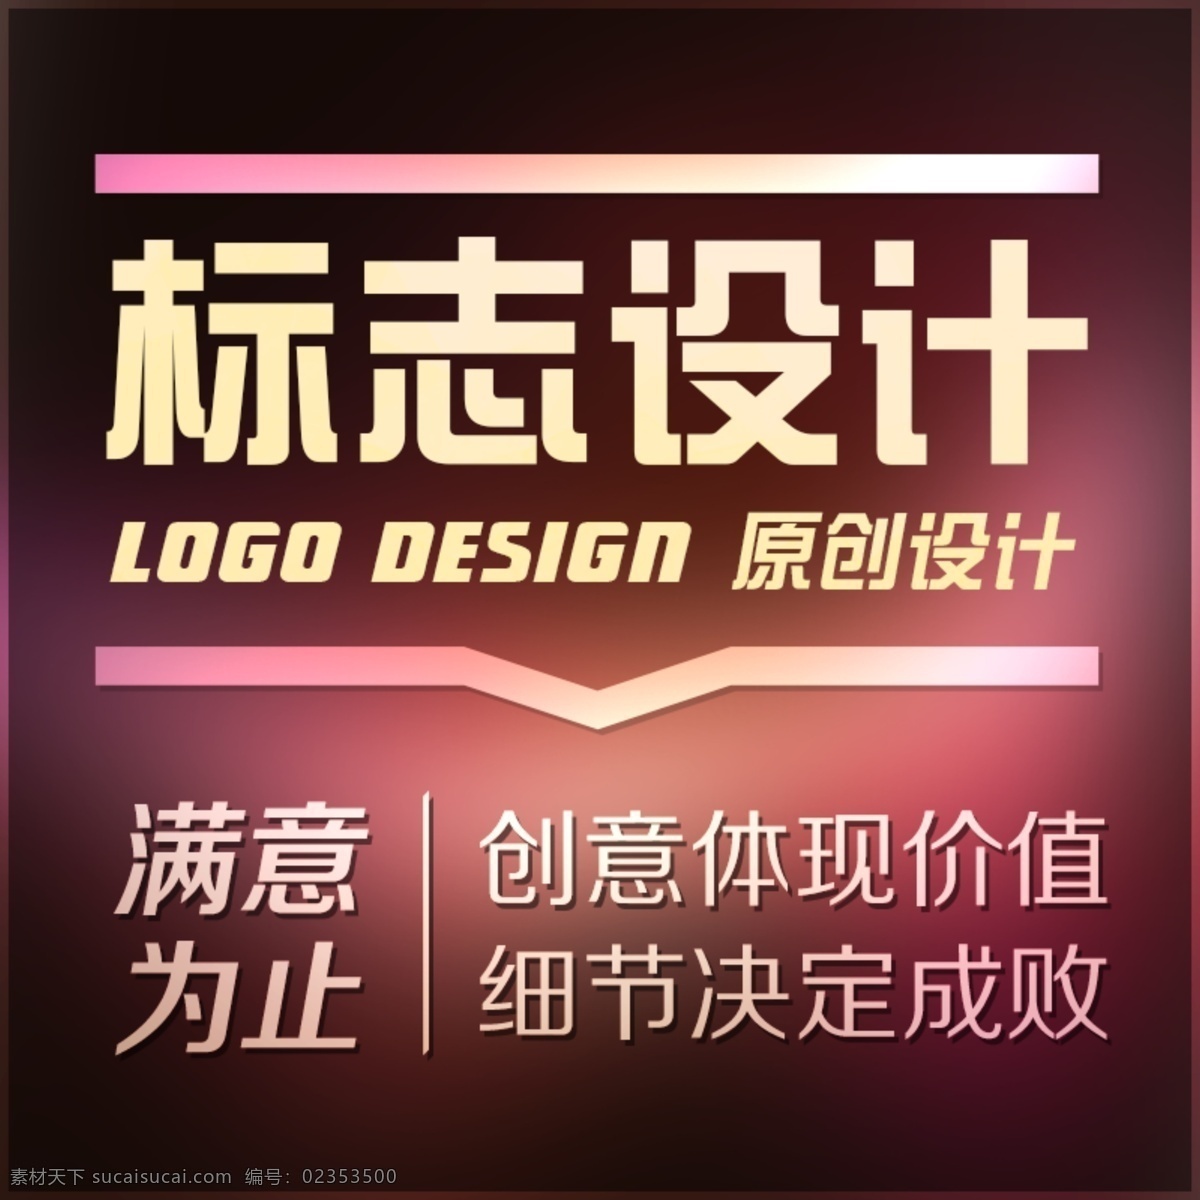 淘宝 标志 logo 主 图 细节决定成败 原创设计 满意为止 创意提现价值 原创淘宝设计